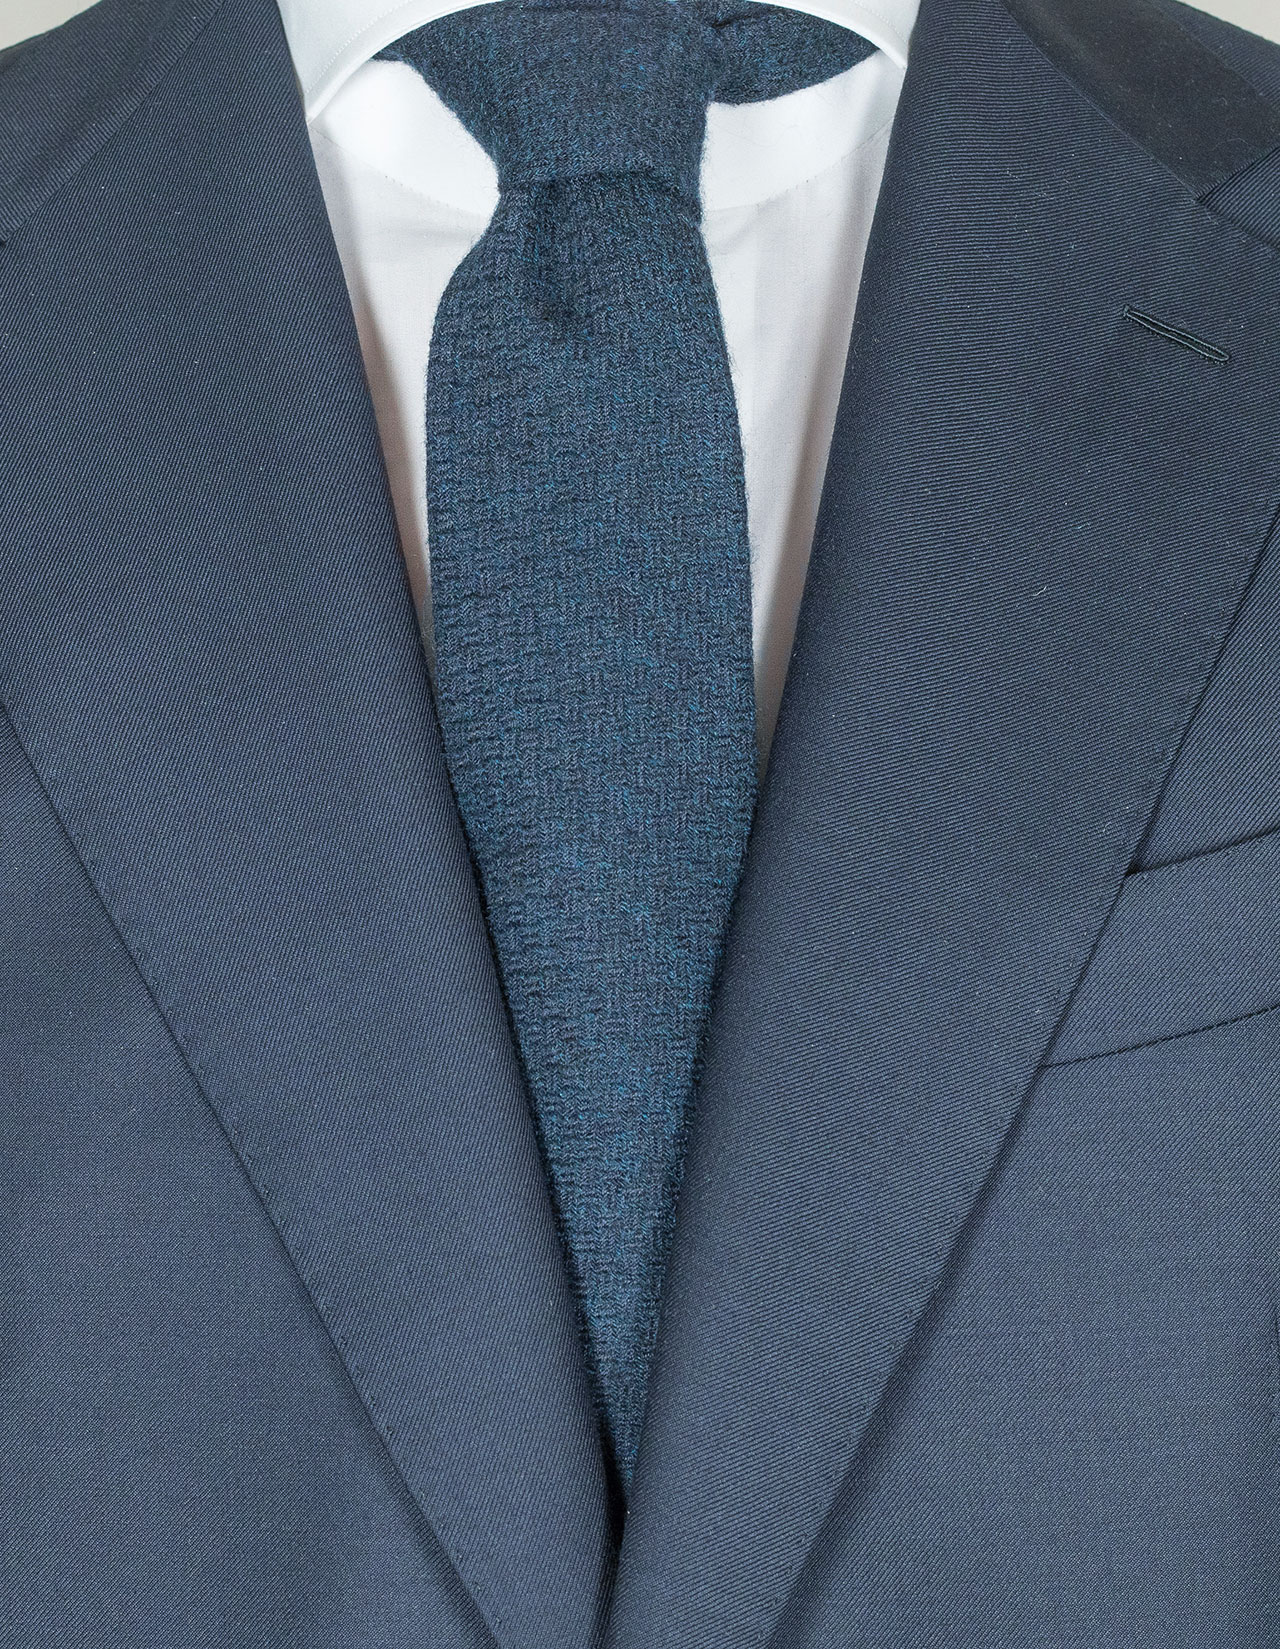 Kiton Krawatte in dunkelblau mit Struktur